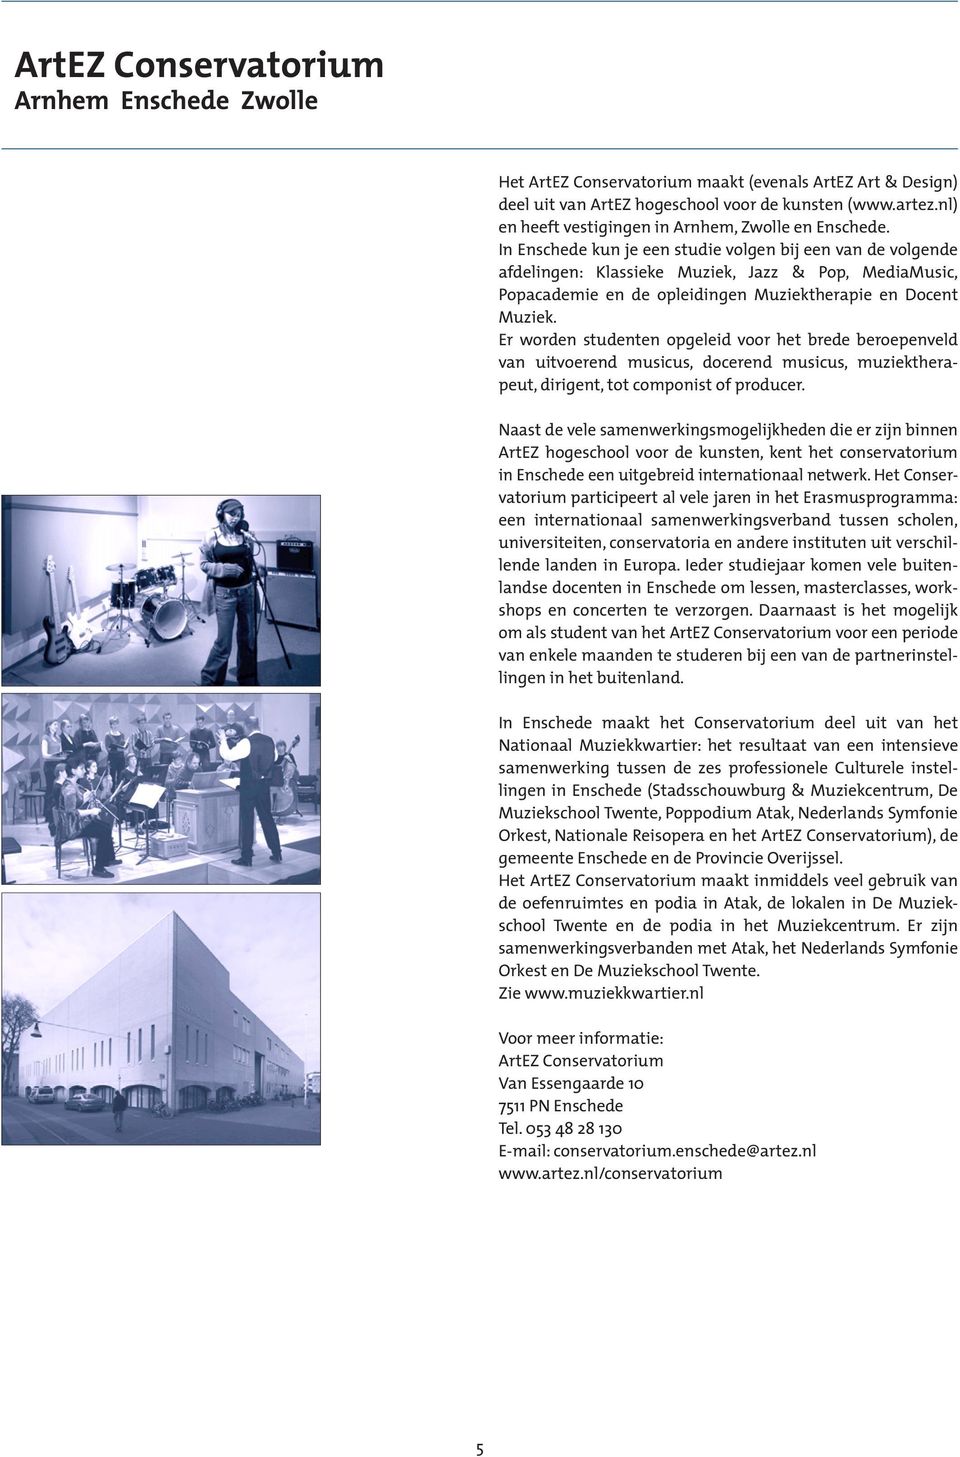 In Enschede kun je een studie volgen bij een van de volgende afdelingen: Klassieke Muziek, Jazz & Pop, MediaMusic, Popacademie en de opleidingen Muziektherapie en Docent Muziek.